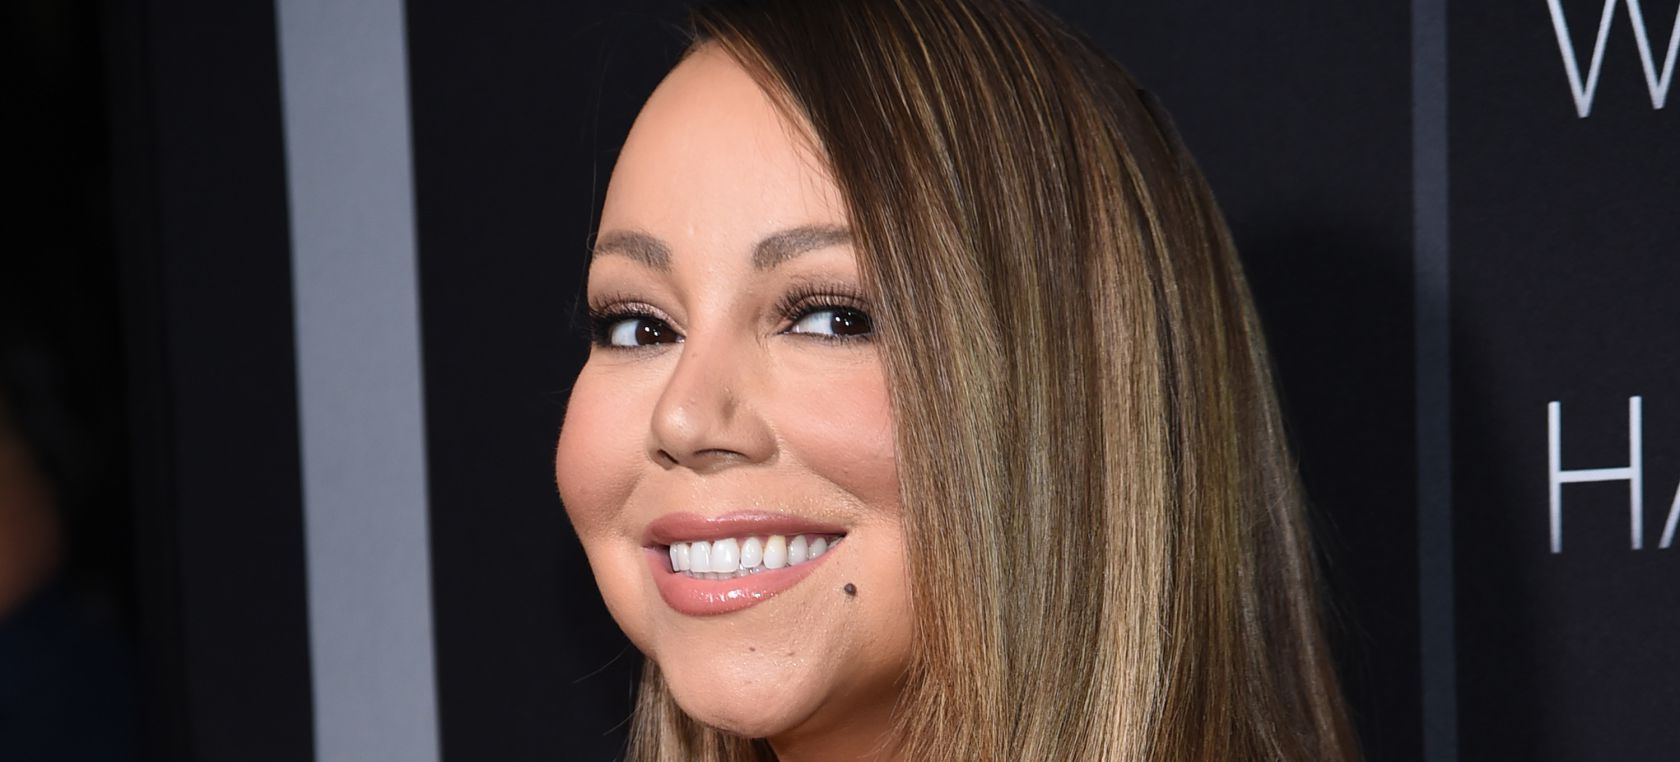 Mariah Carey celebra el número 1 de ‘All I Want For Christmas Is You’ con humor en redes sociales